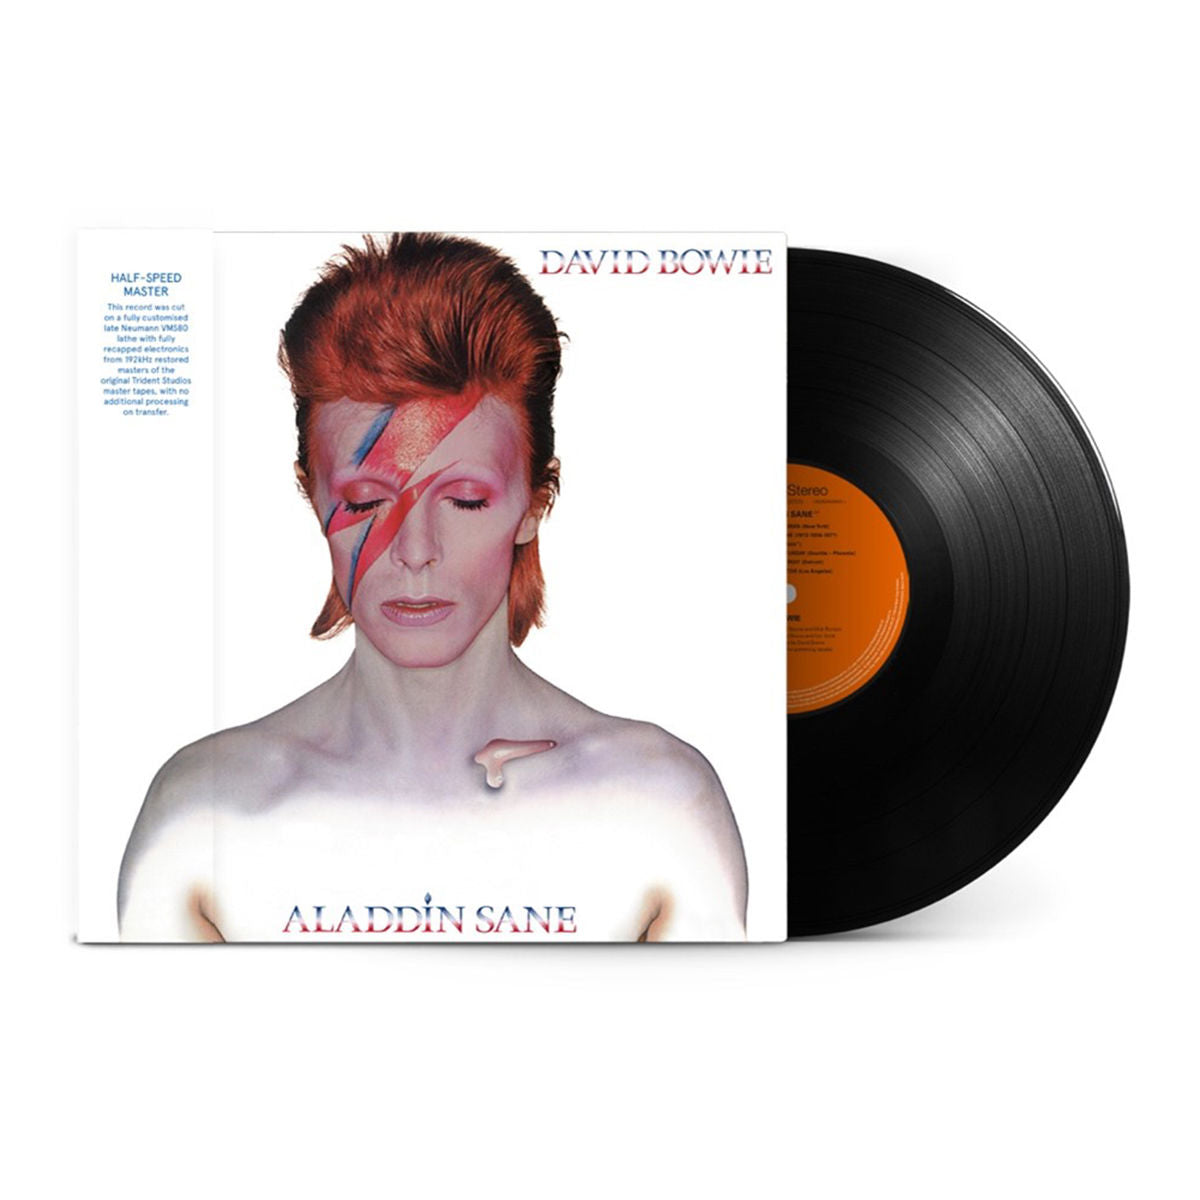 David Bowie - Aladdin Sane (50th Anniversary): Limited Edition Half-Speed Master Vinyl LP